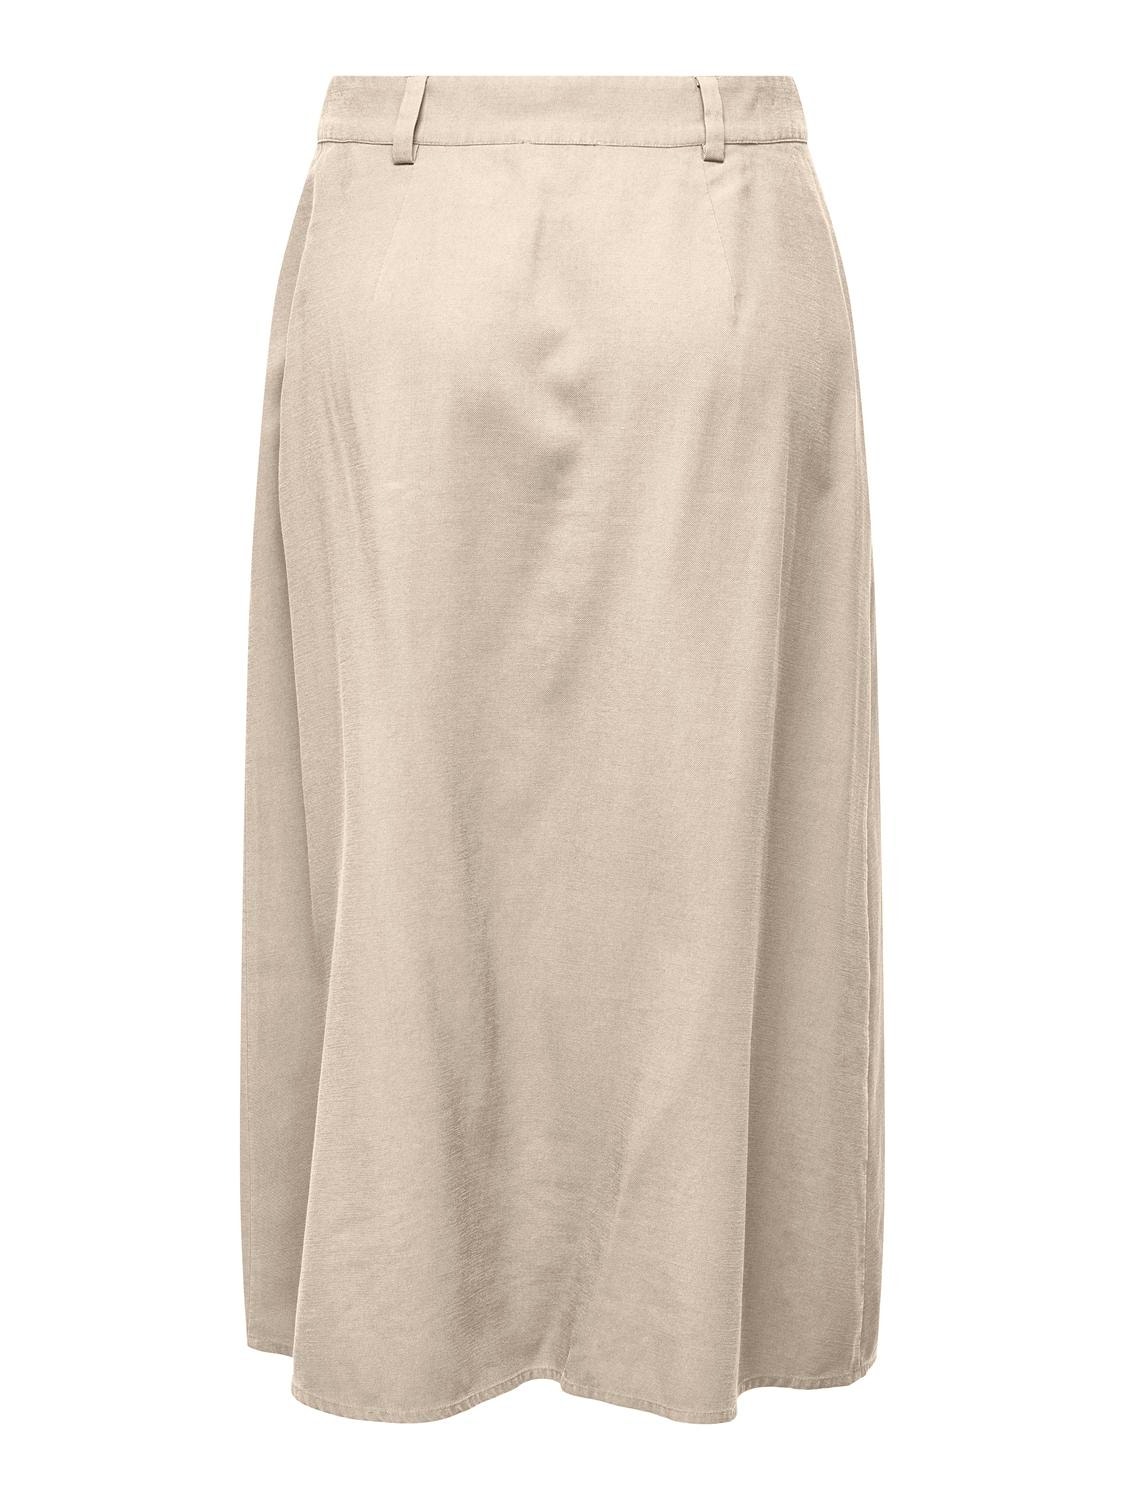 ONLY Mid waist Midi skirt -Sandshell - 15319881